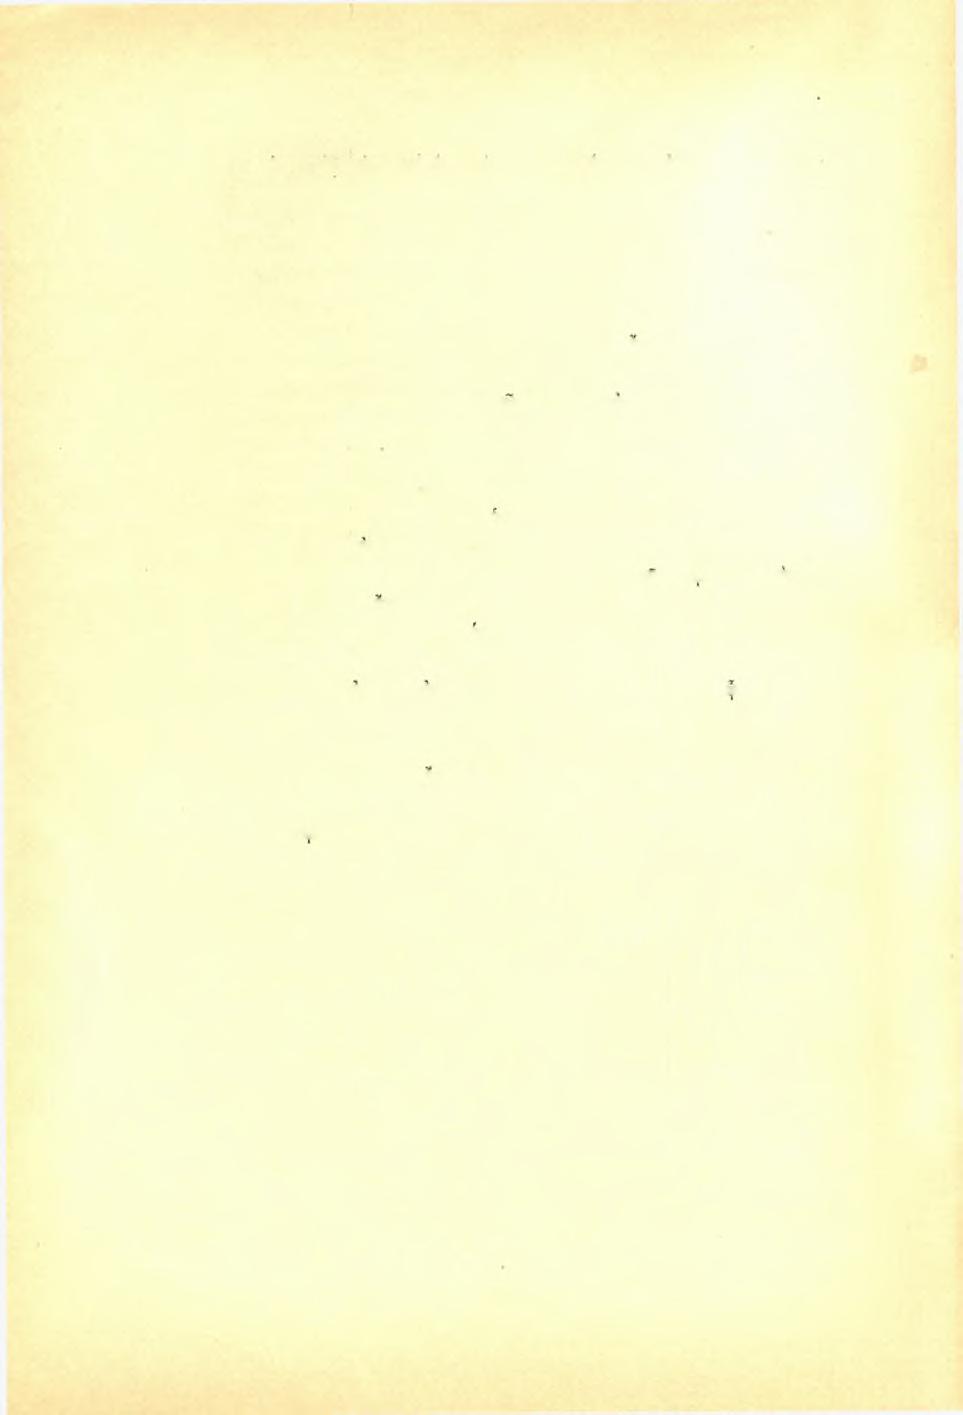 52 Δ. Εύαγγελίδον, άνασκαφή Ν αγοϋ Χίον. ΠΑΕ 1921 είναι όρθογώνιος λίθος κάτω άποκεκρουμένος έχων άριστερά κατ δρθήν γωνίαν λάξευσιν καθ δλον τό πάχος.